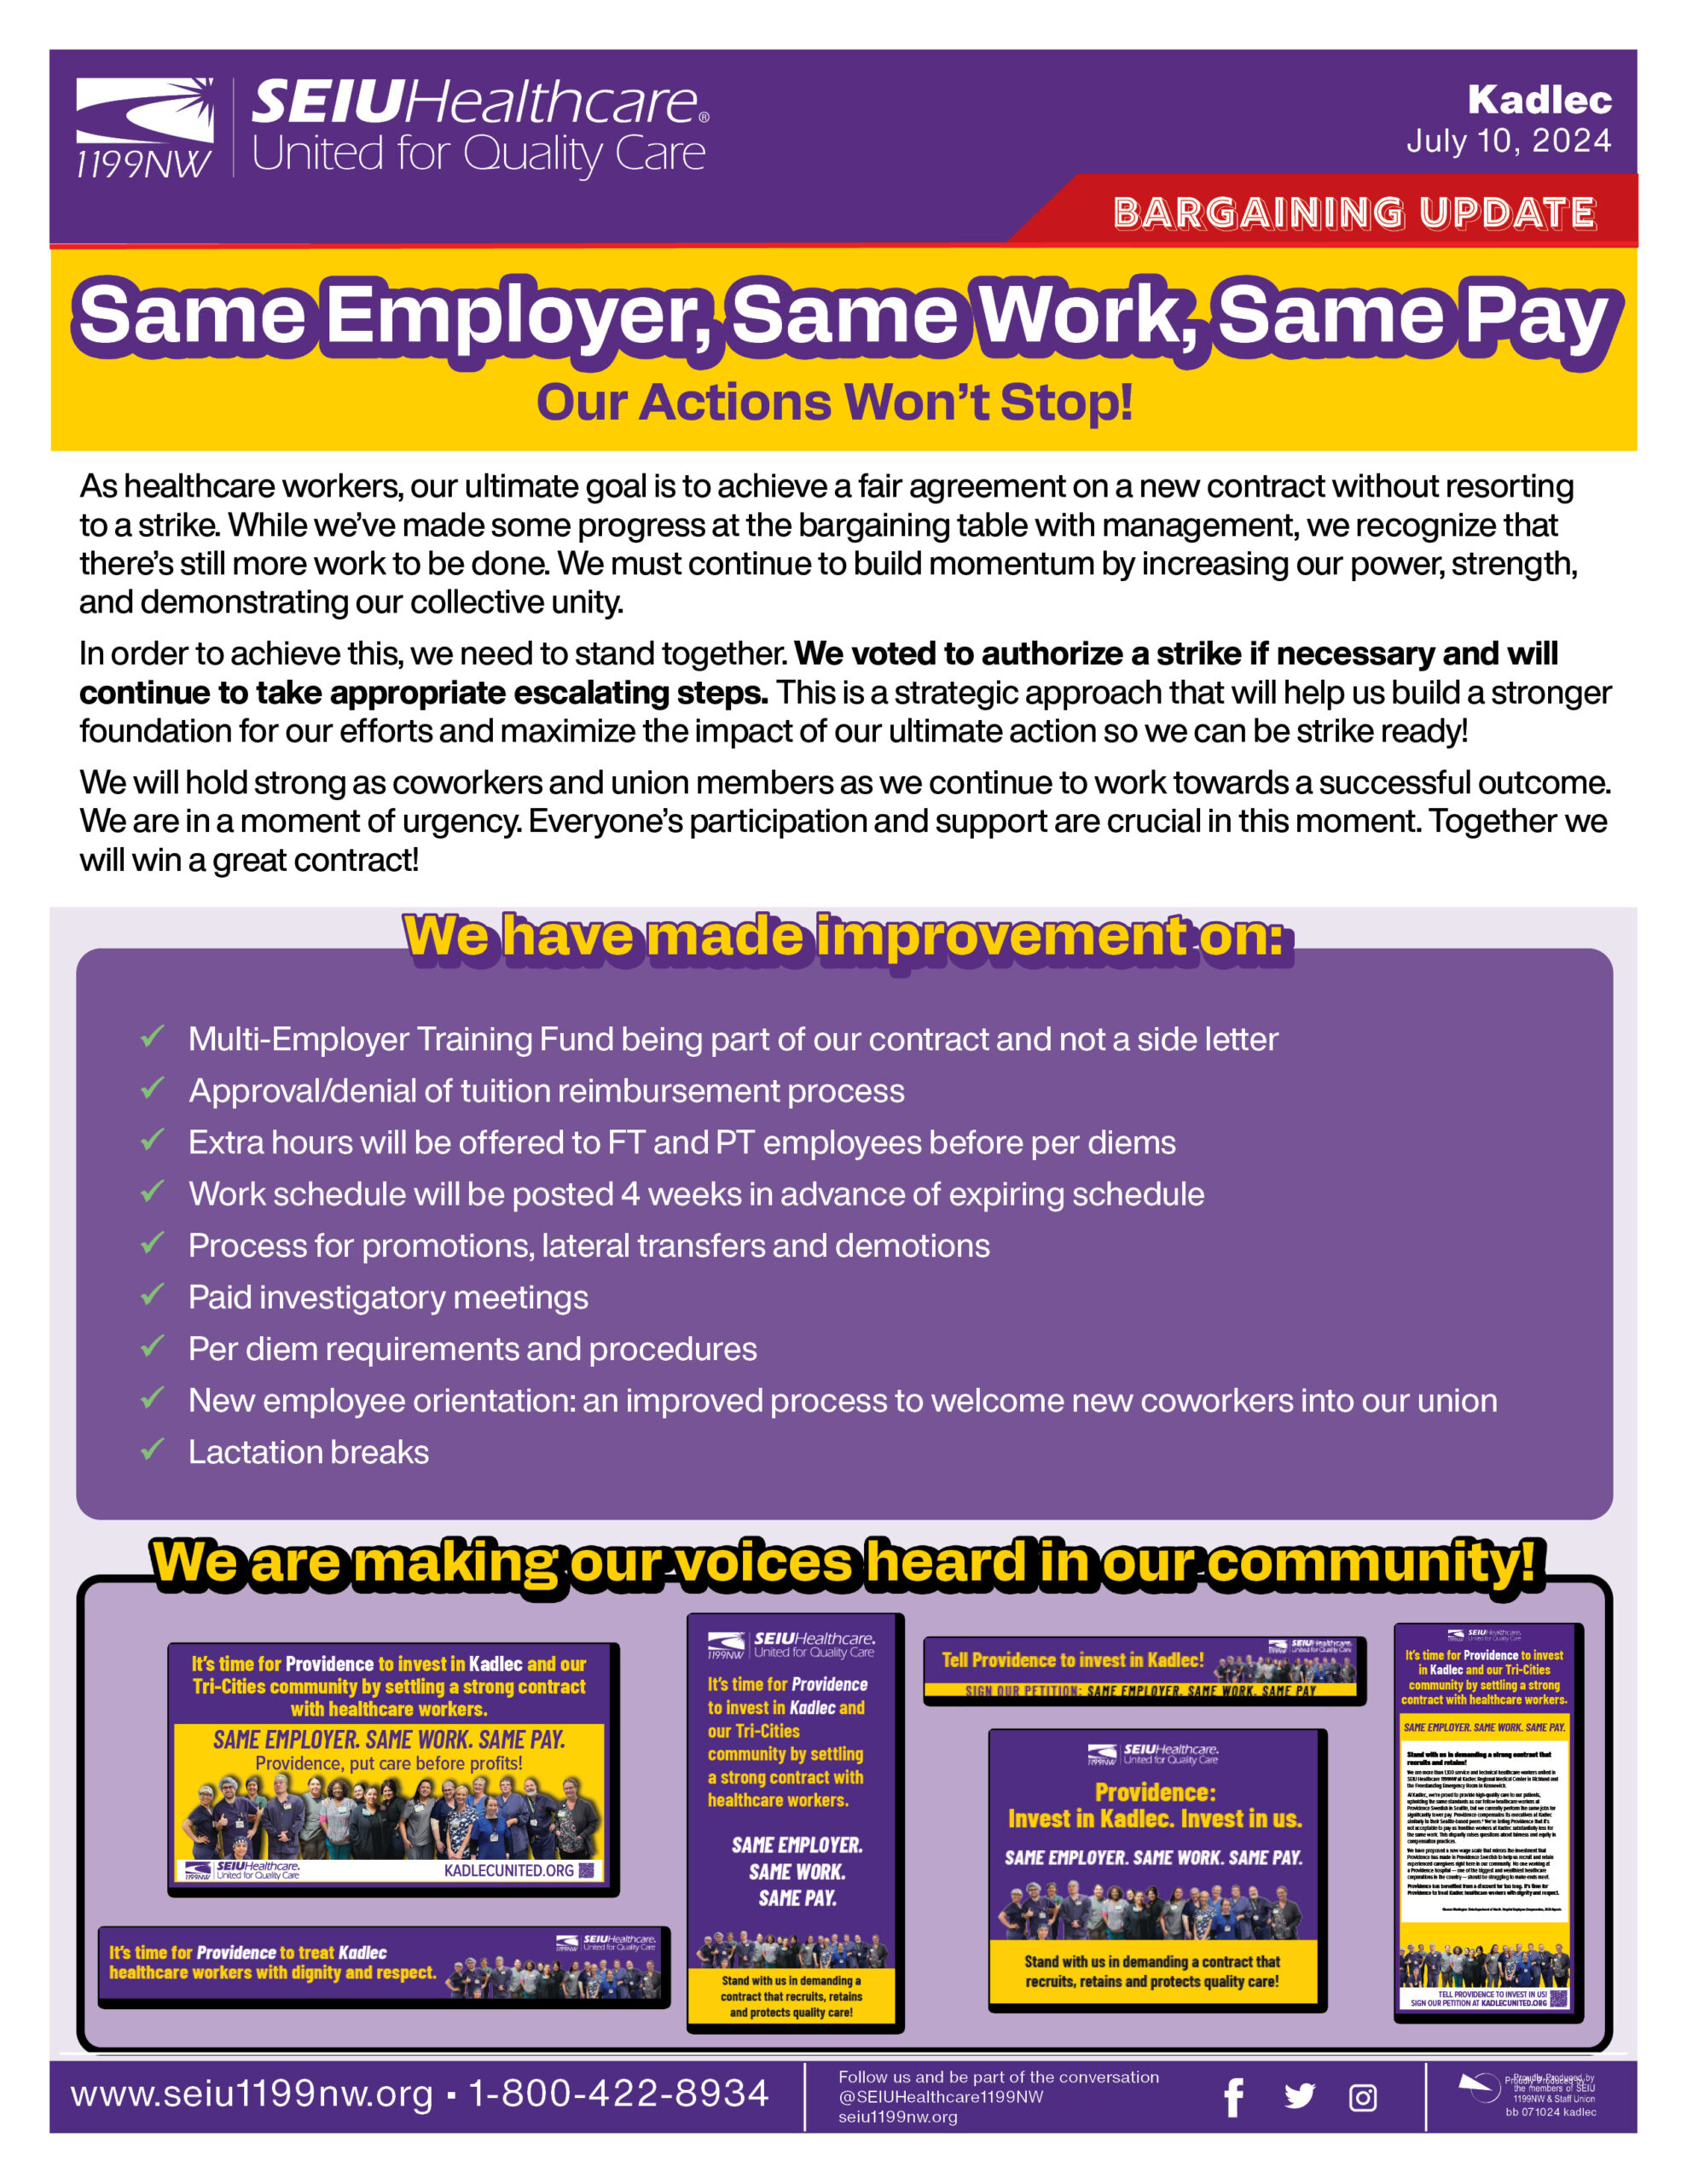 Same Employer, Same Work, Same Pay